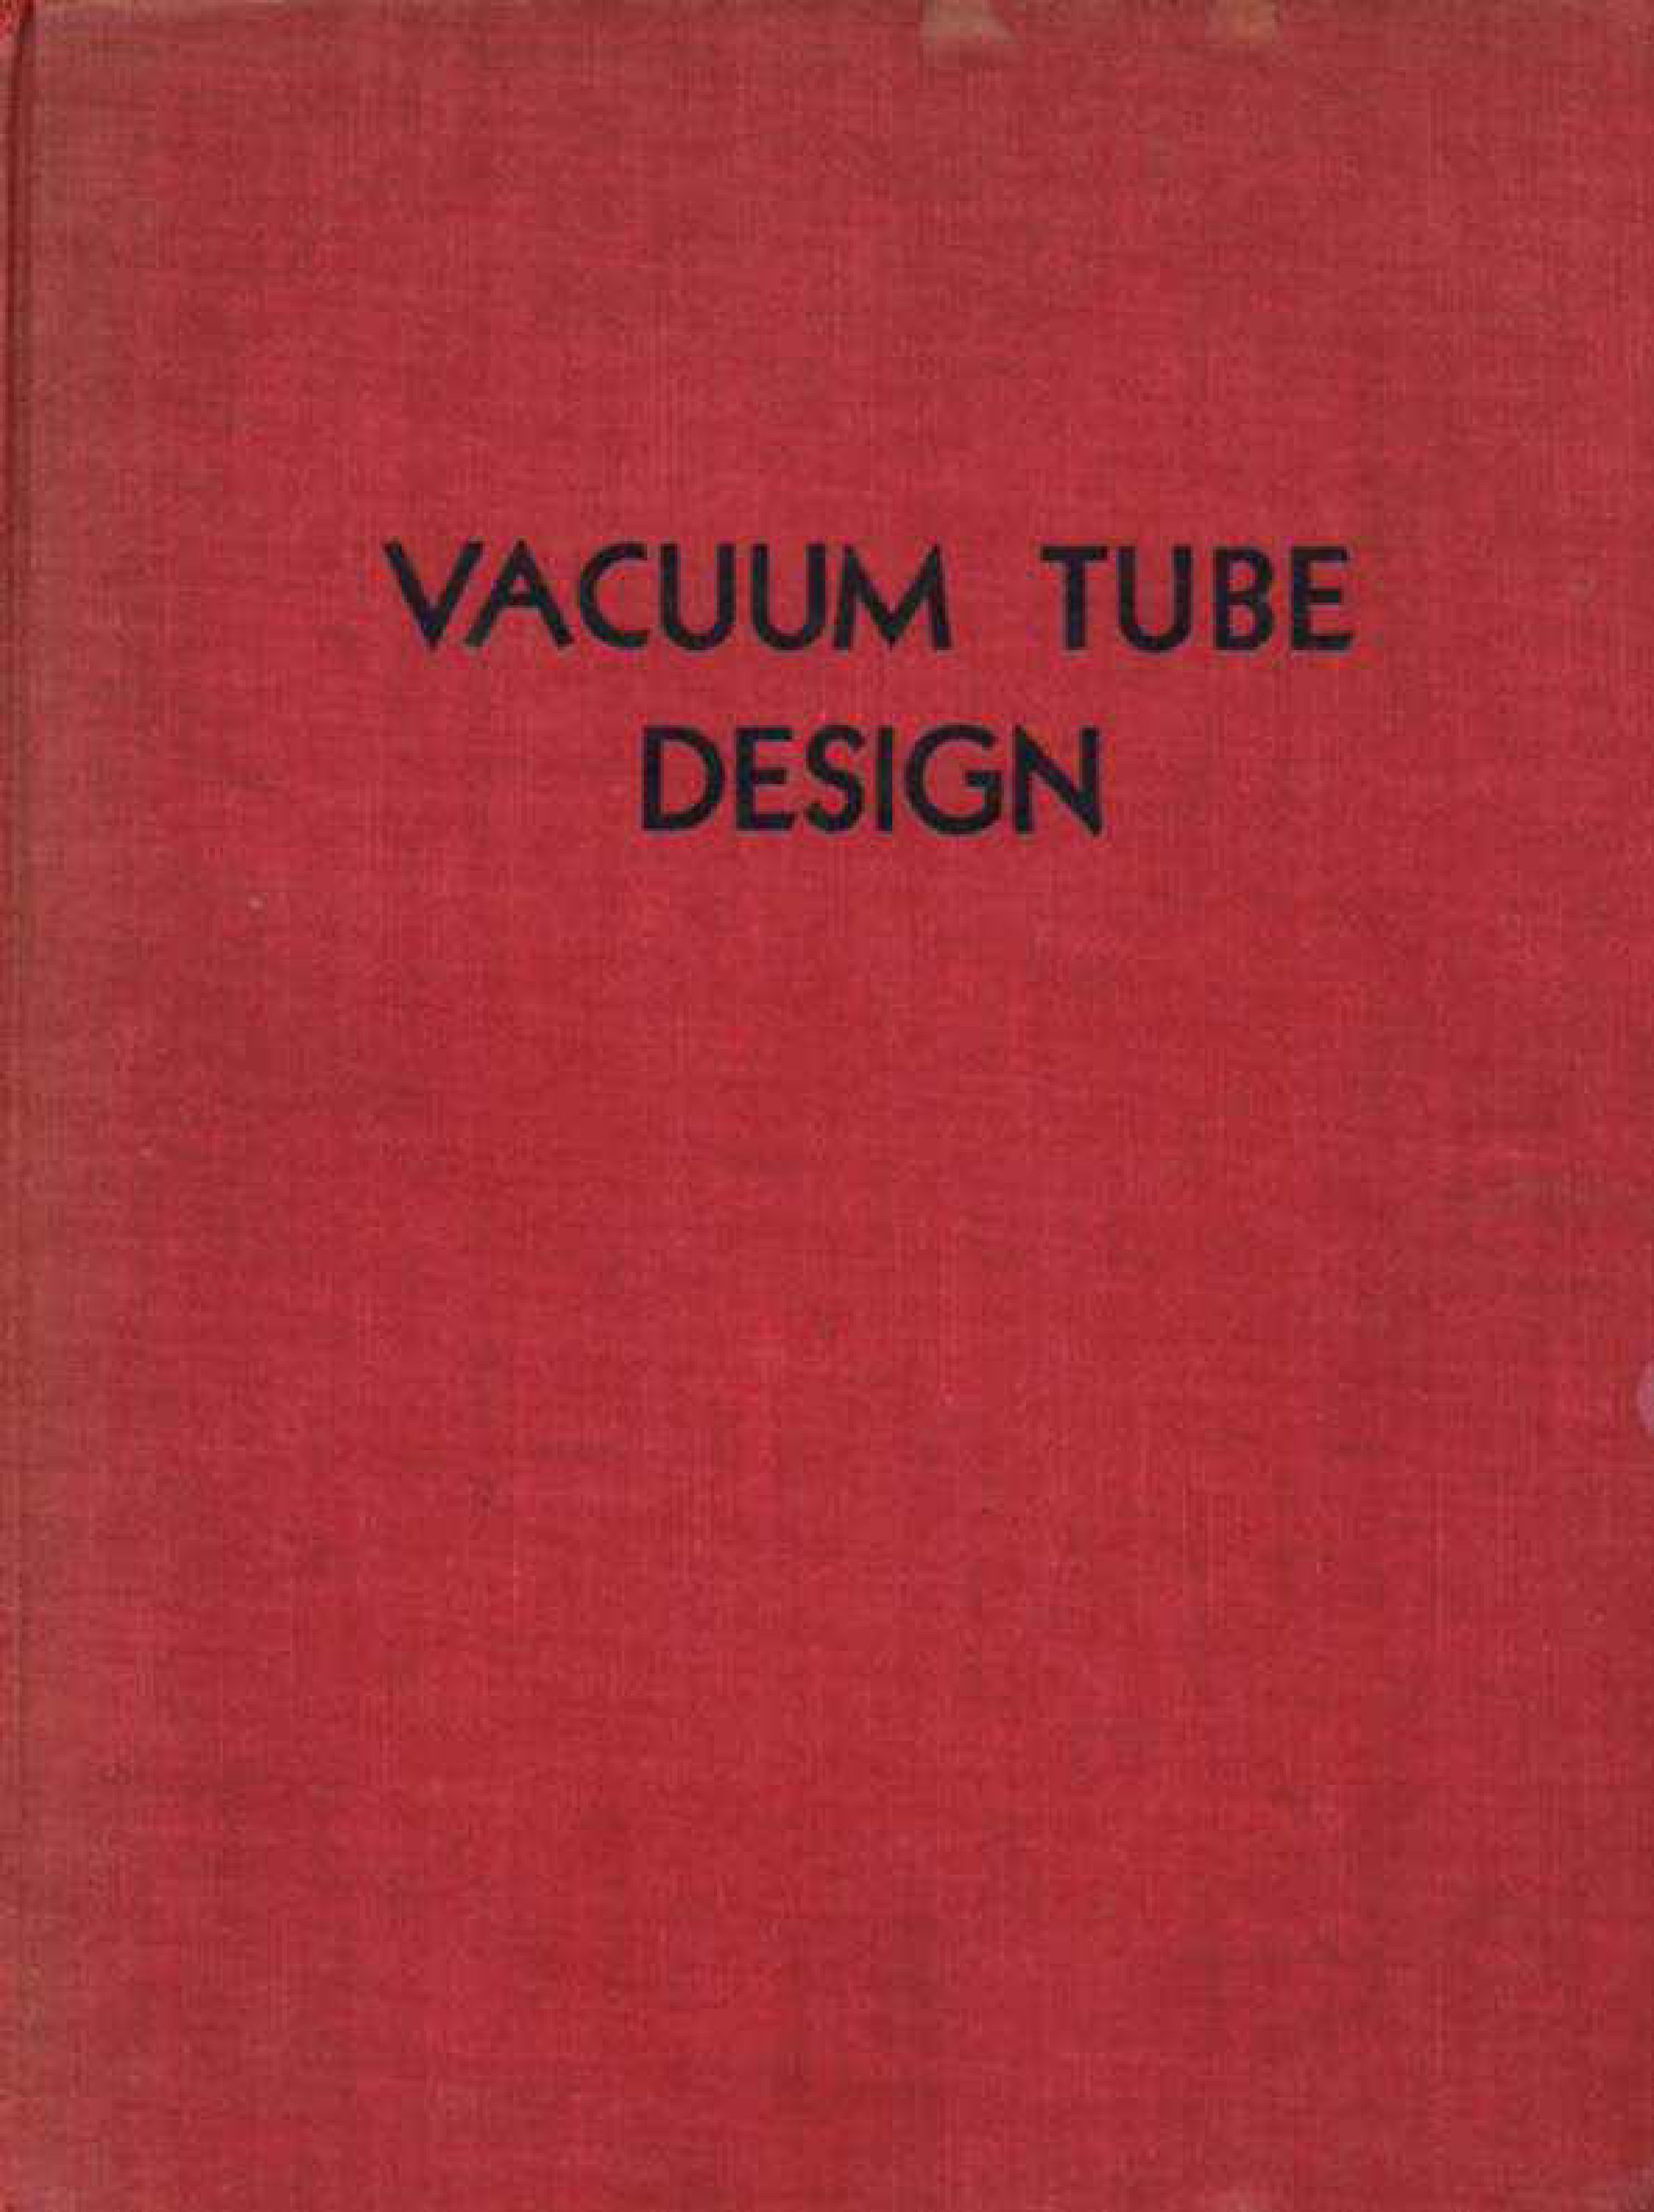 Vacuum Tube Design 1940